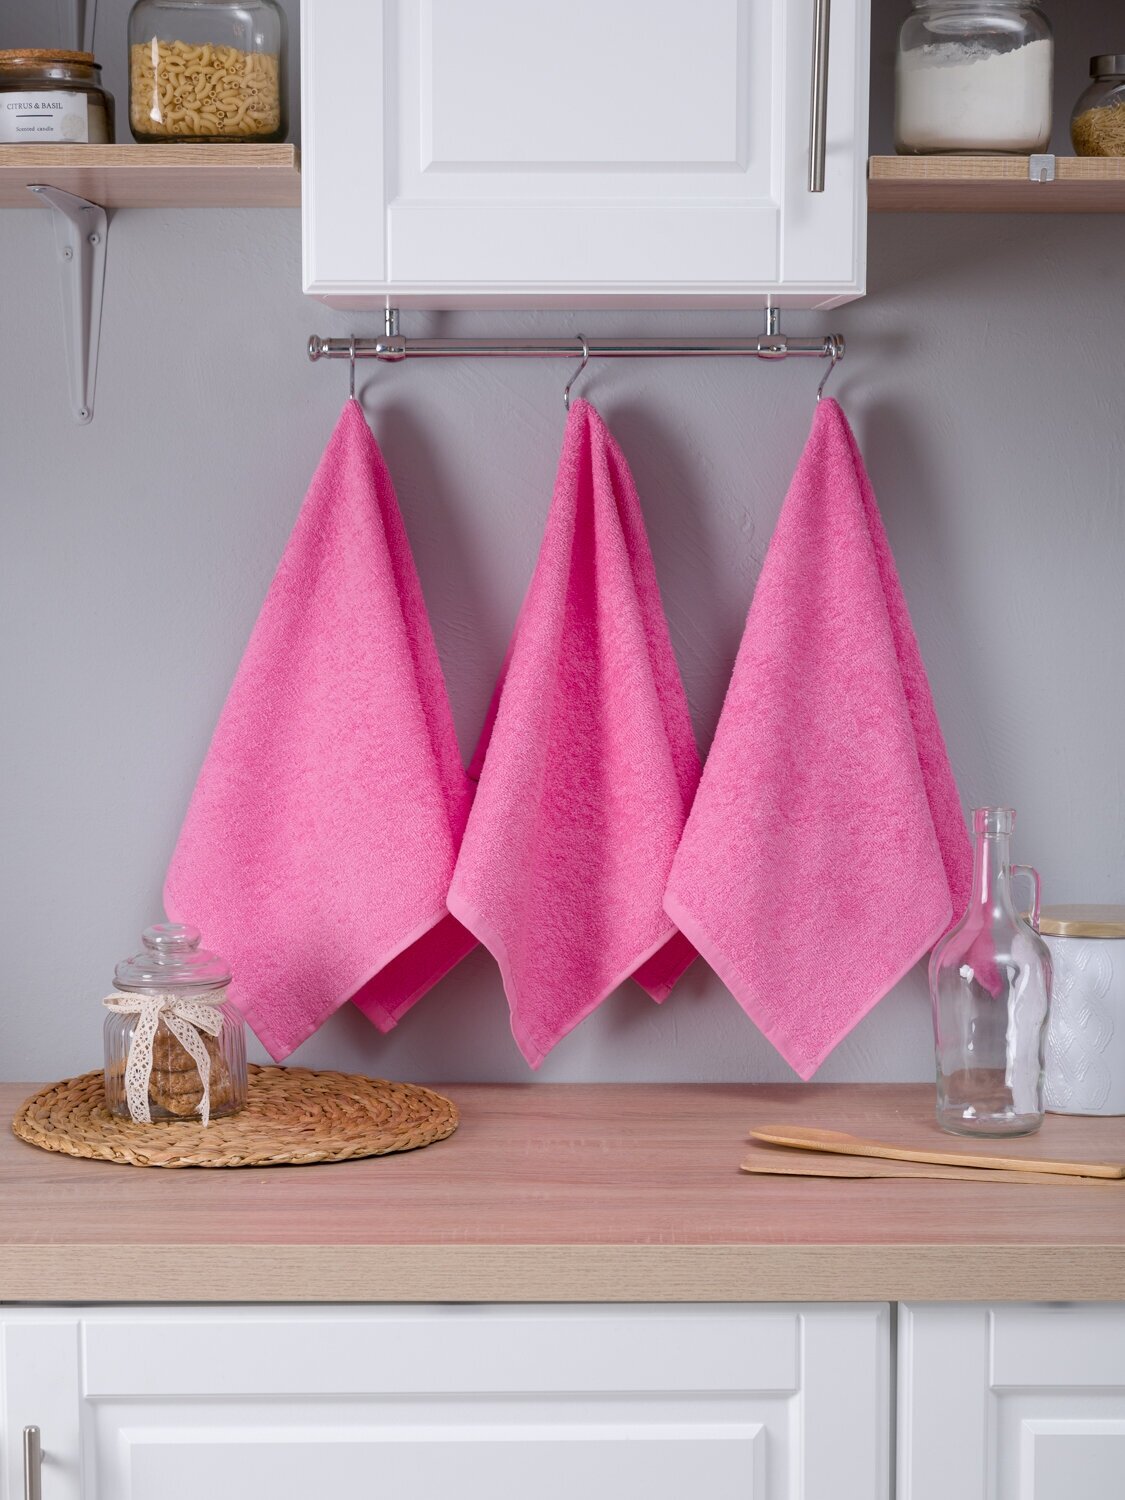 Набор полотенец BIO-TEXTILES махровых 3 шт 40*70 розовый кухонный для лица рук ванной комплект в подарок 100% хлопок